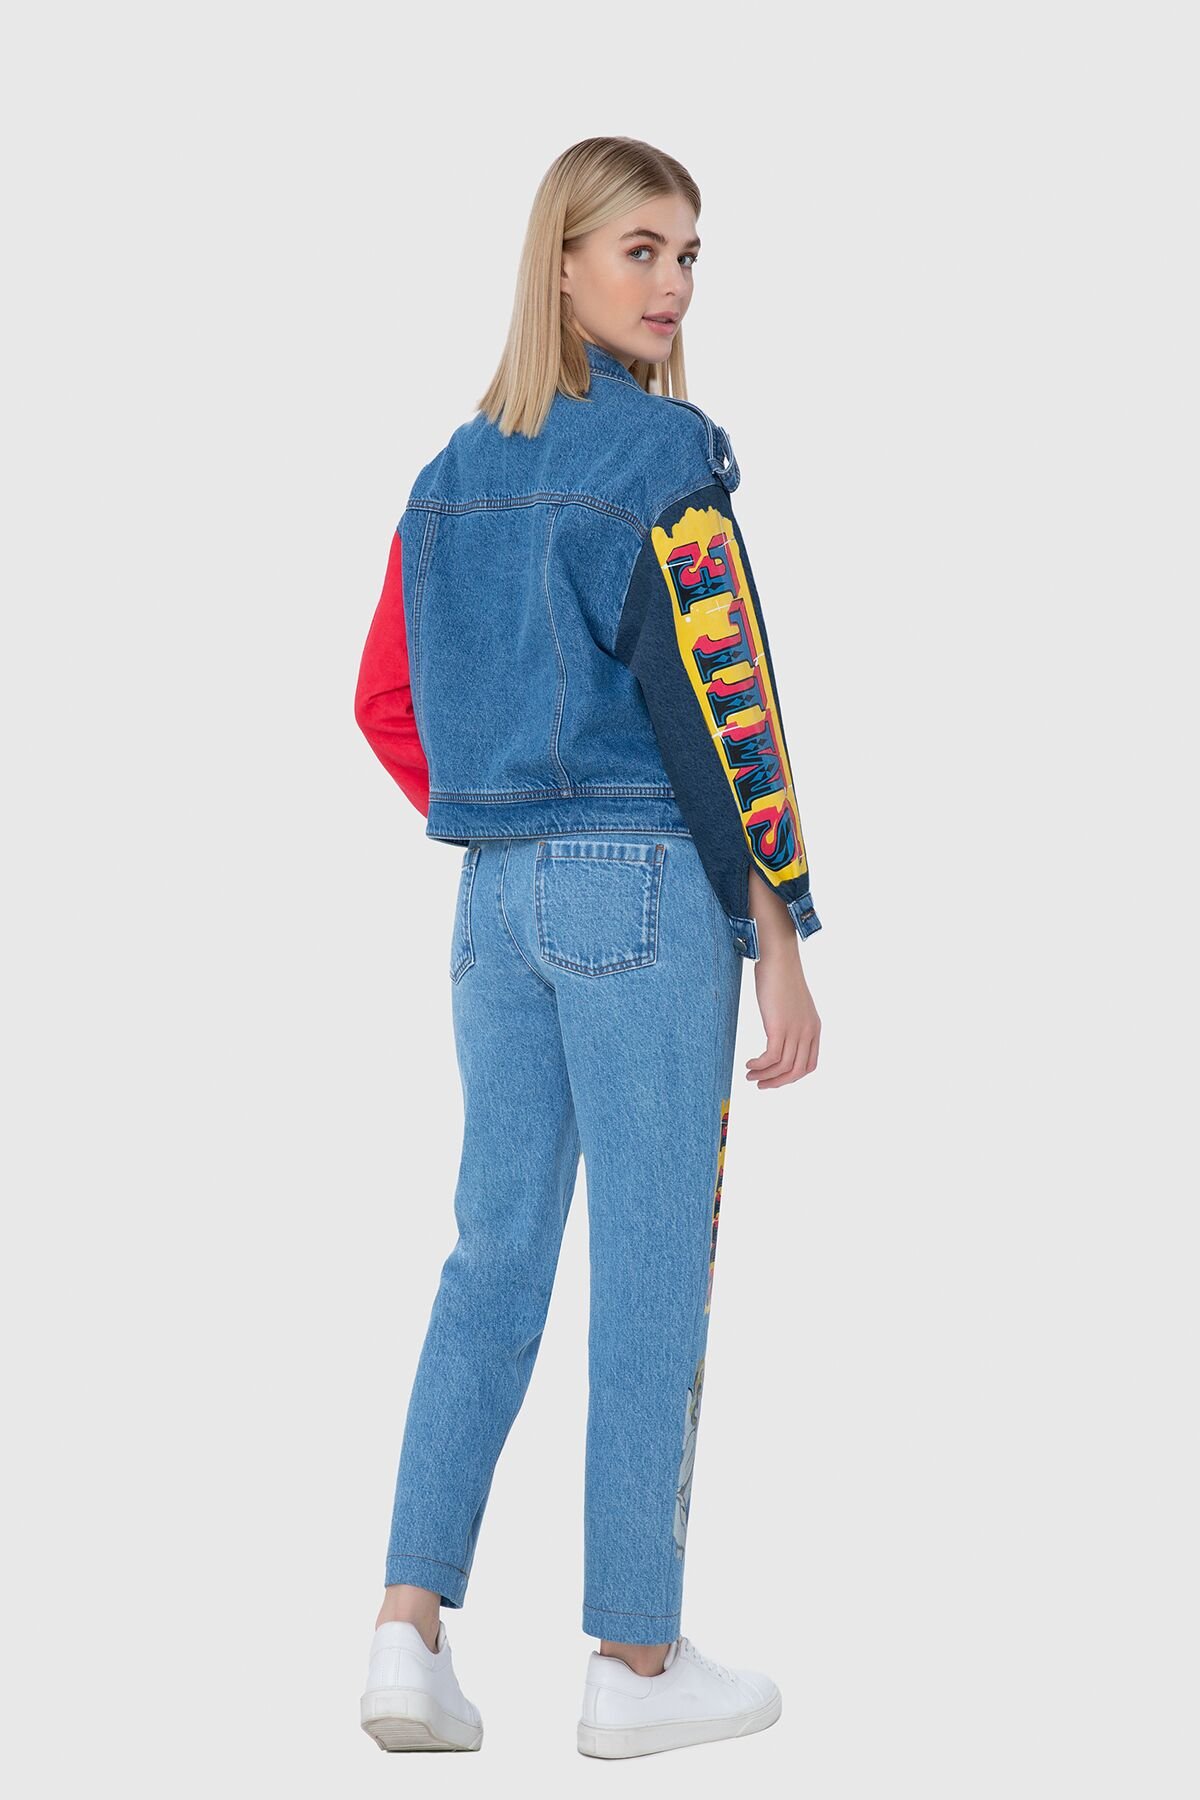 Jakron Ve Renkli Nakış Detaylı İki Renk Jean Ceket